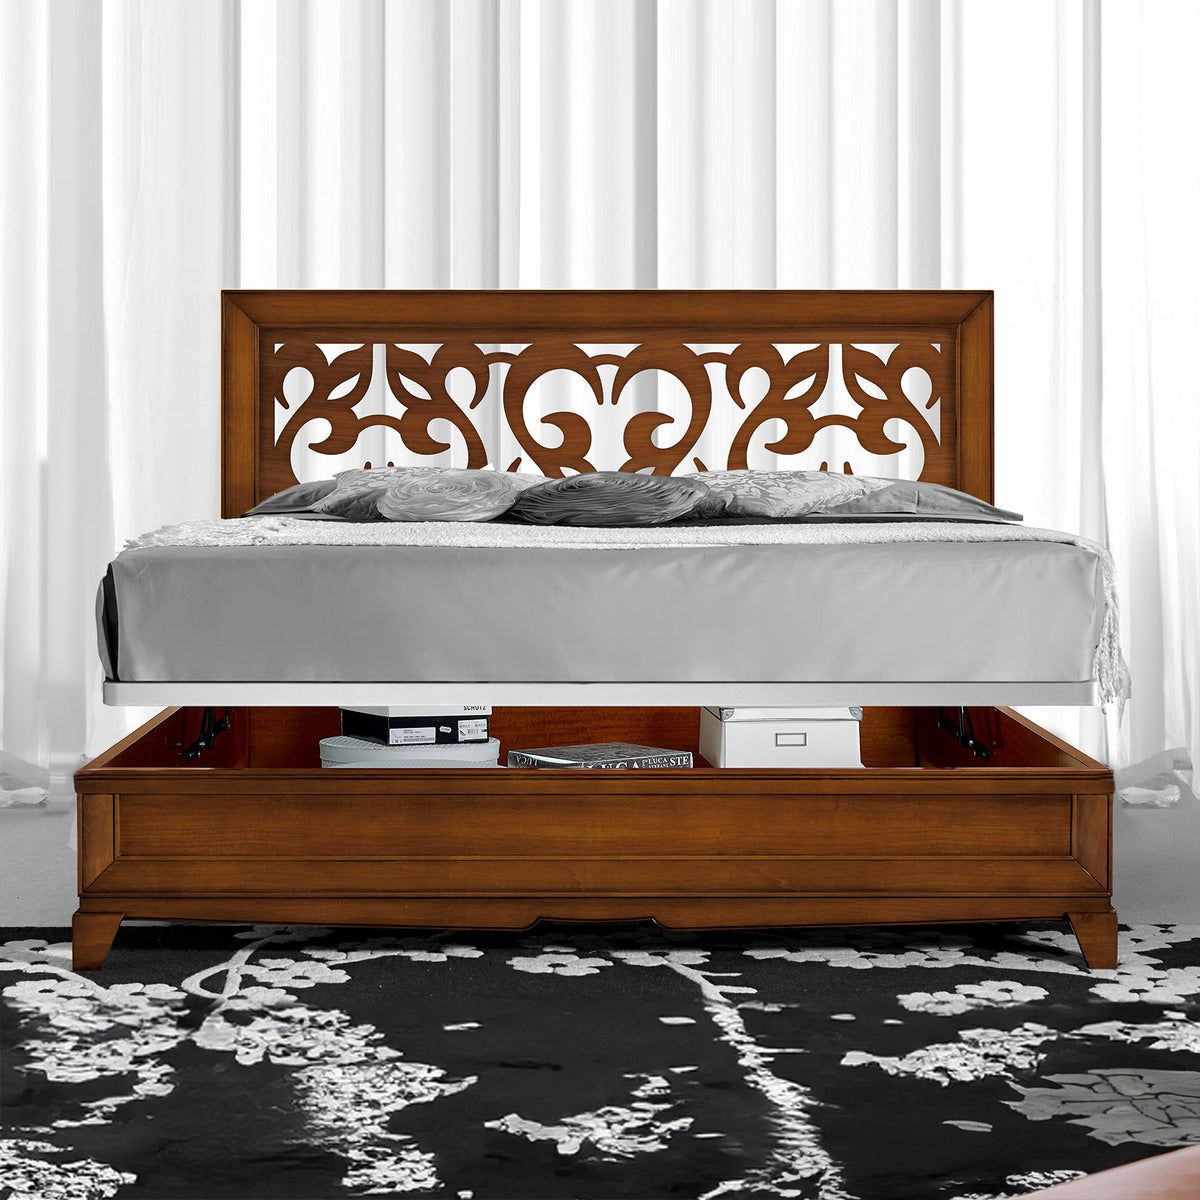 KING SIZE Lit double classique en bois avec coffre de rangement Tête de lit perforée L 194 P 211 cm Collezione Arte D'Este Piombini